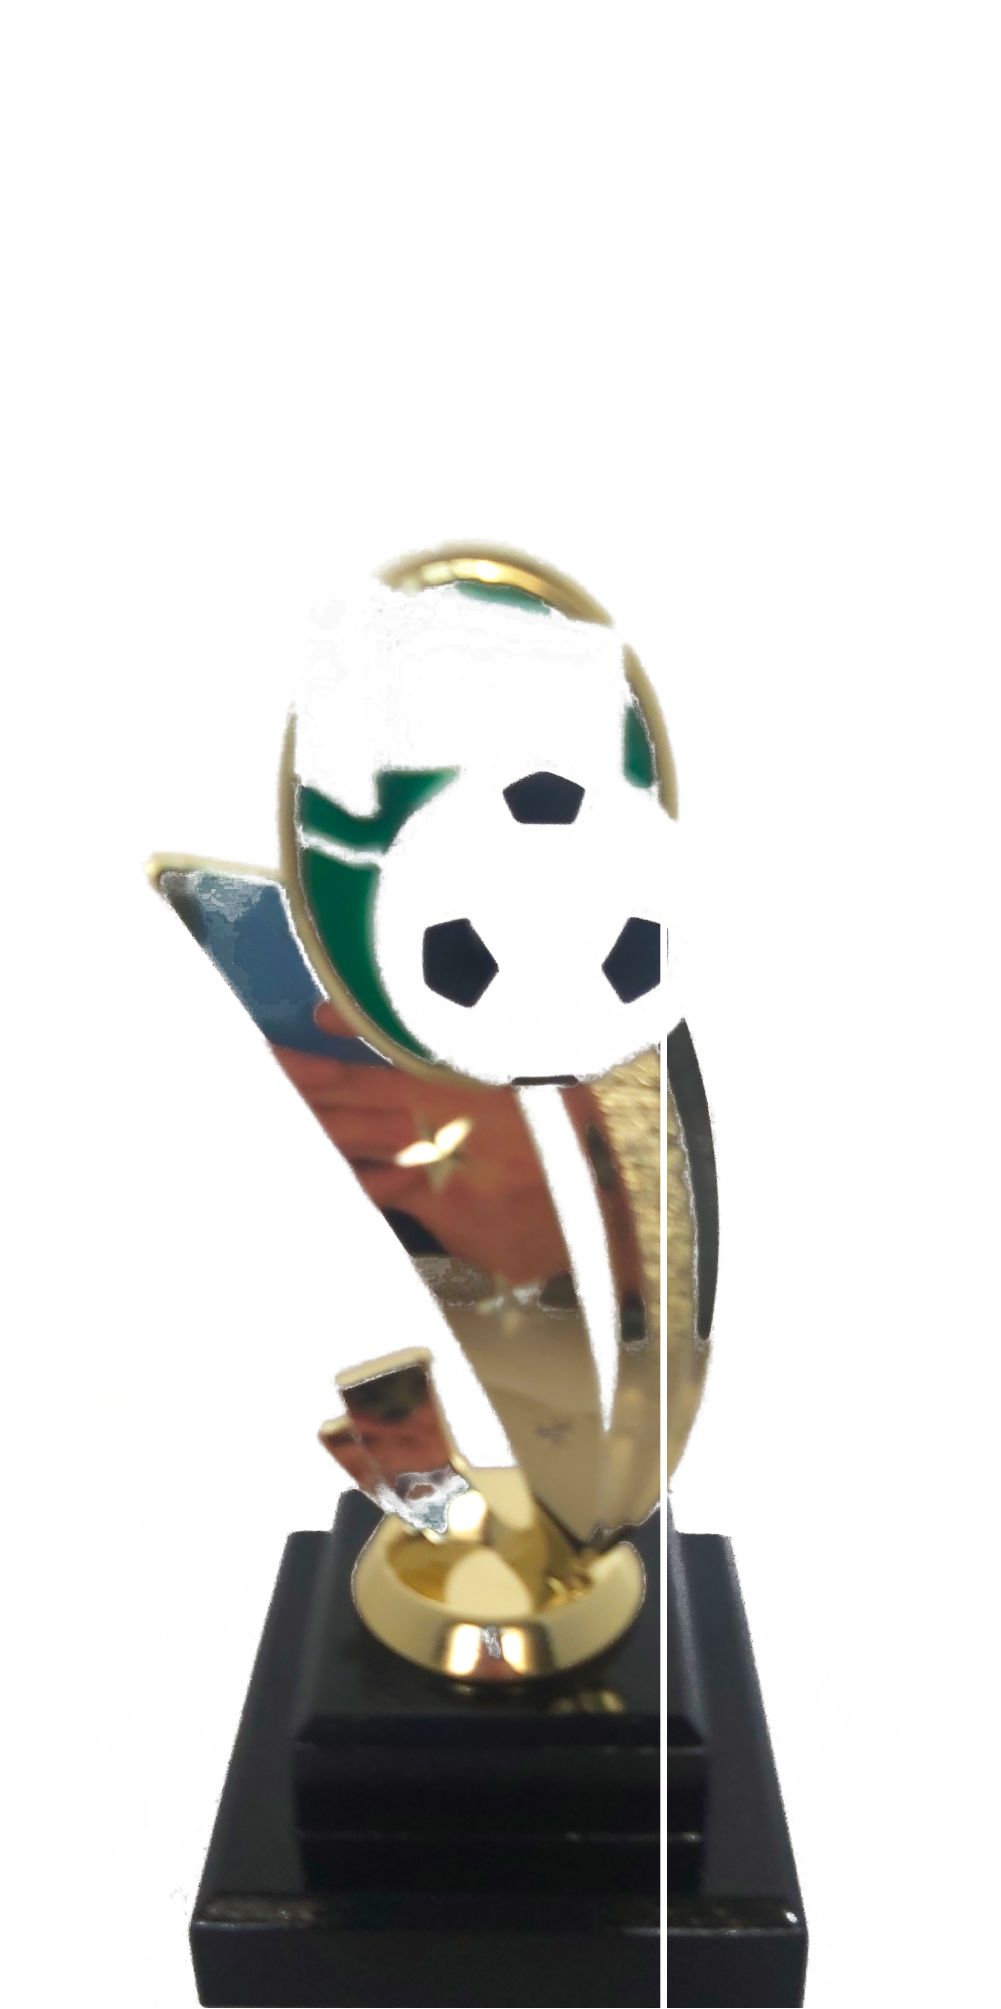 Soccer Sport Scene Trophy 185mm